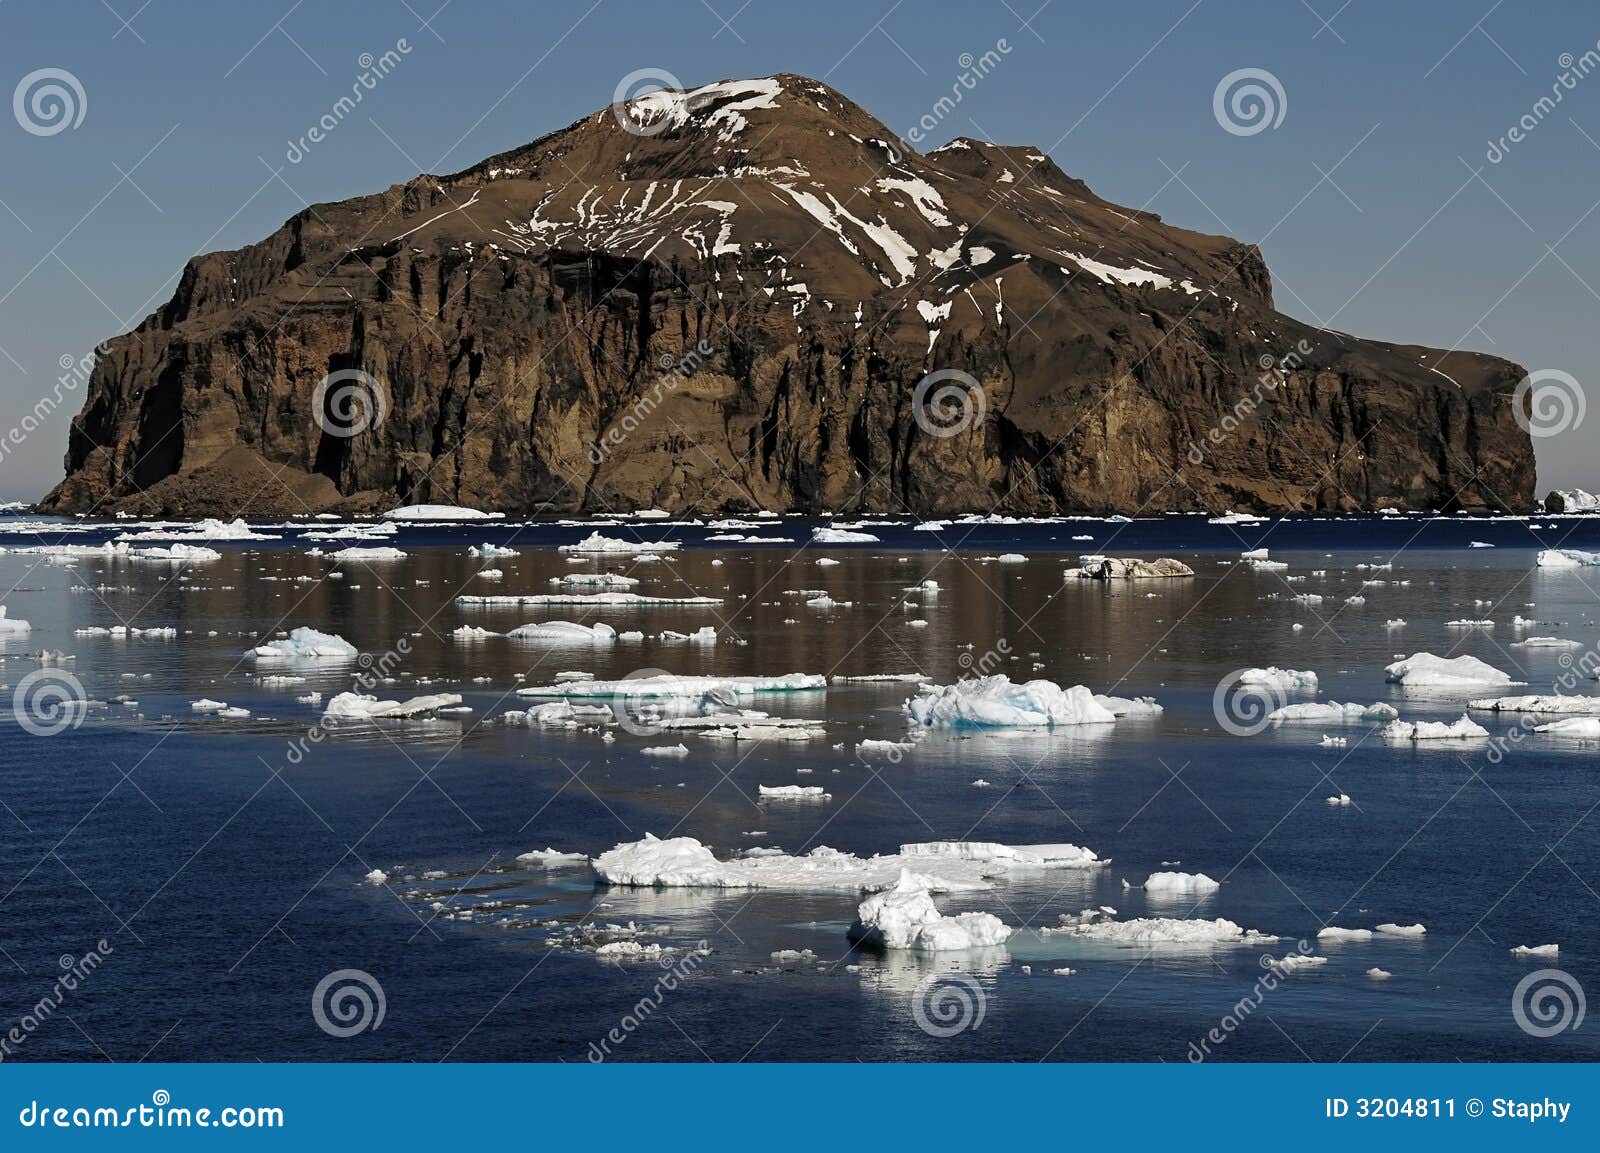 antarctic rocky island